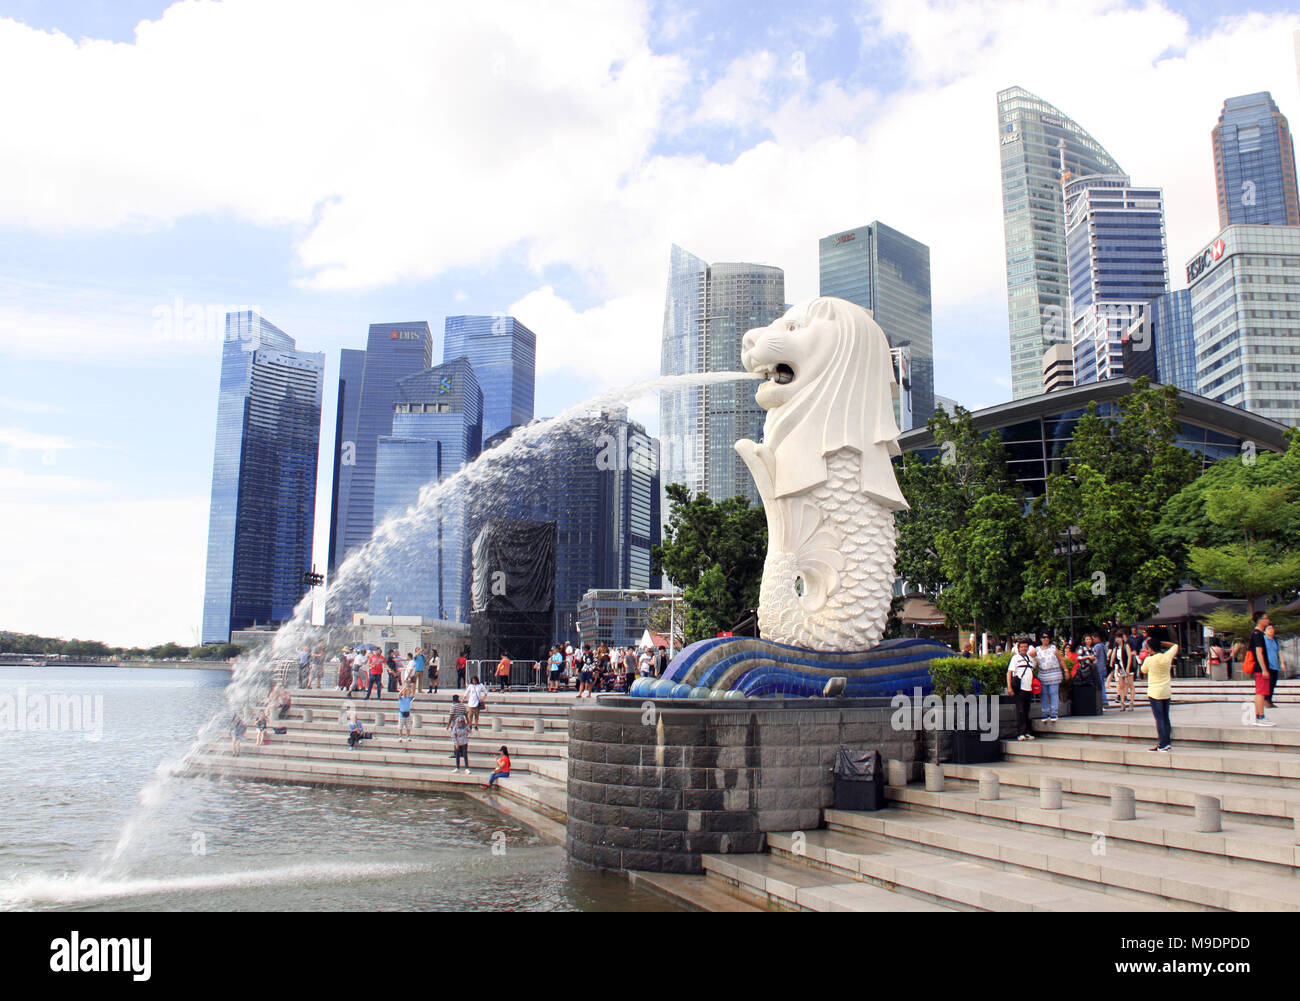 Singapour - 8 mars, 2018 : statue du Merlion (fontaine de la plus célèbre attraction touristique) dans Parc Merlion et gratte-ciel dans la ville de Singapour. Banque D'Images